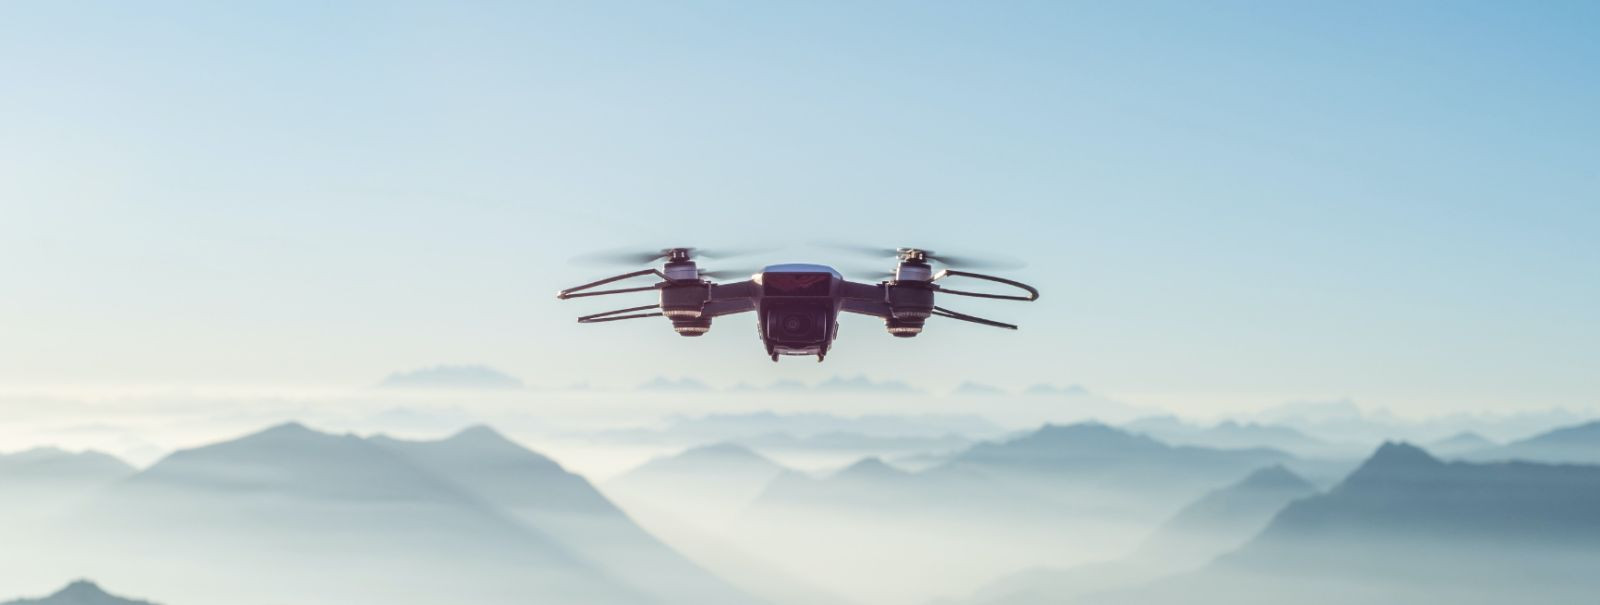 Droonivideograafia viitab videomaterjali jäädvustamisele kasutades mehitamata õhusõidukeid (UAV), mida tuntakse üldiselt kui droone. See tehnoloogia on revoluts